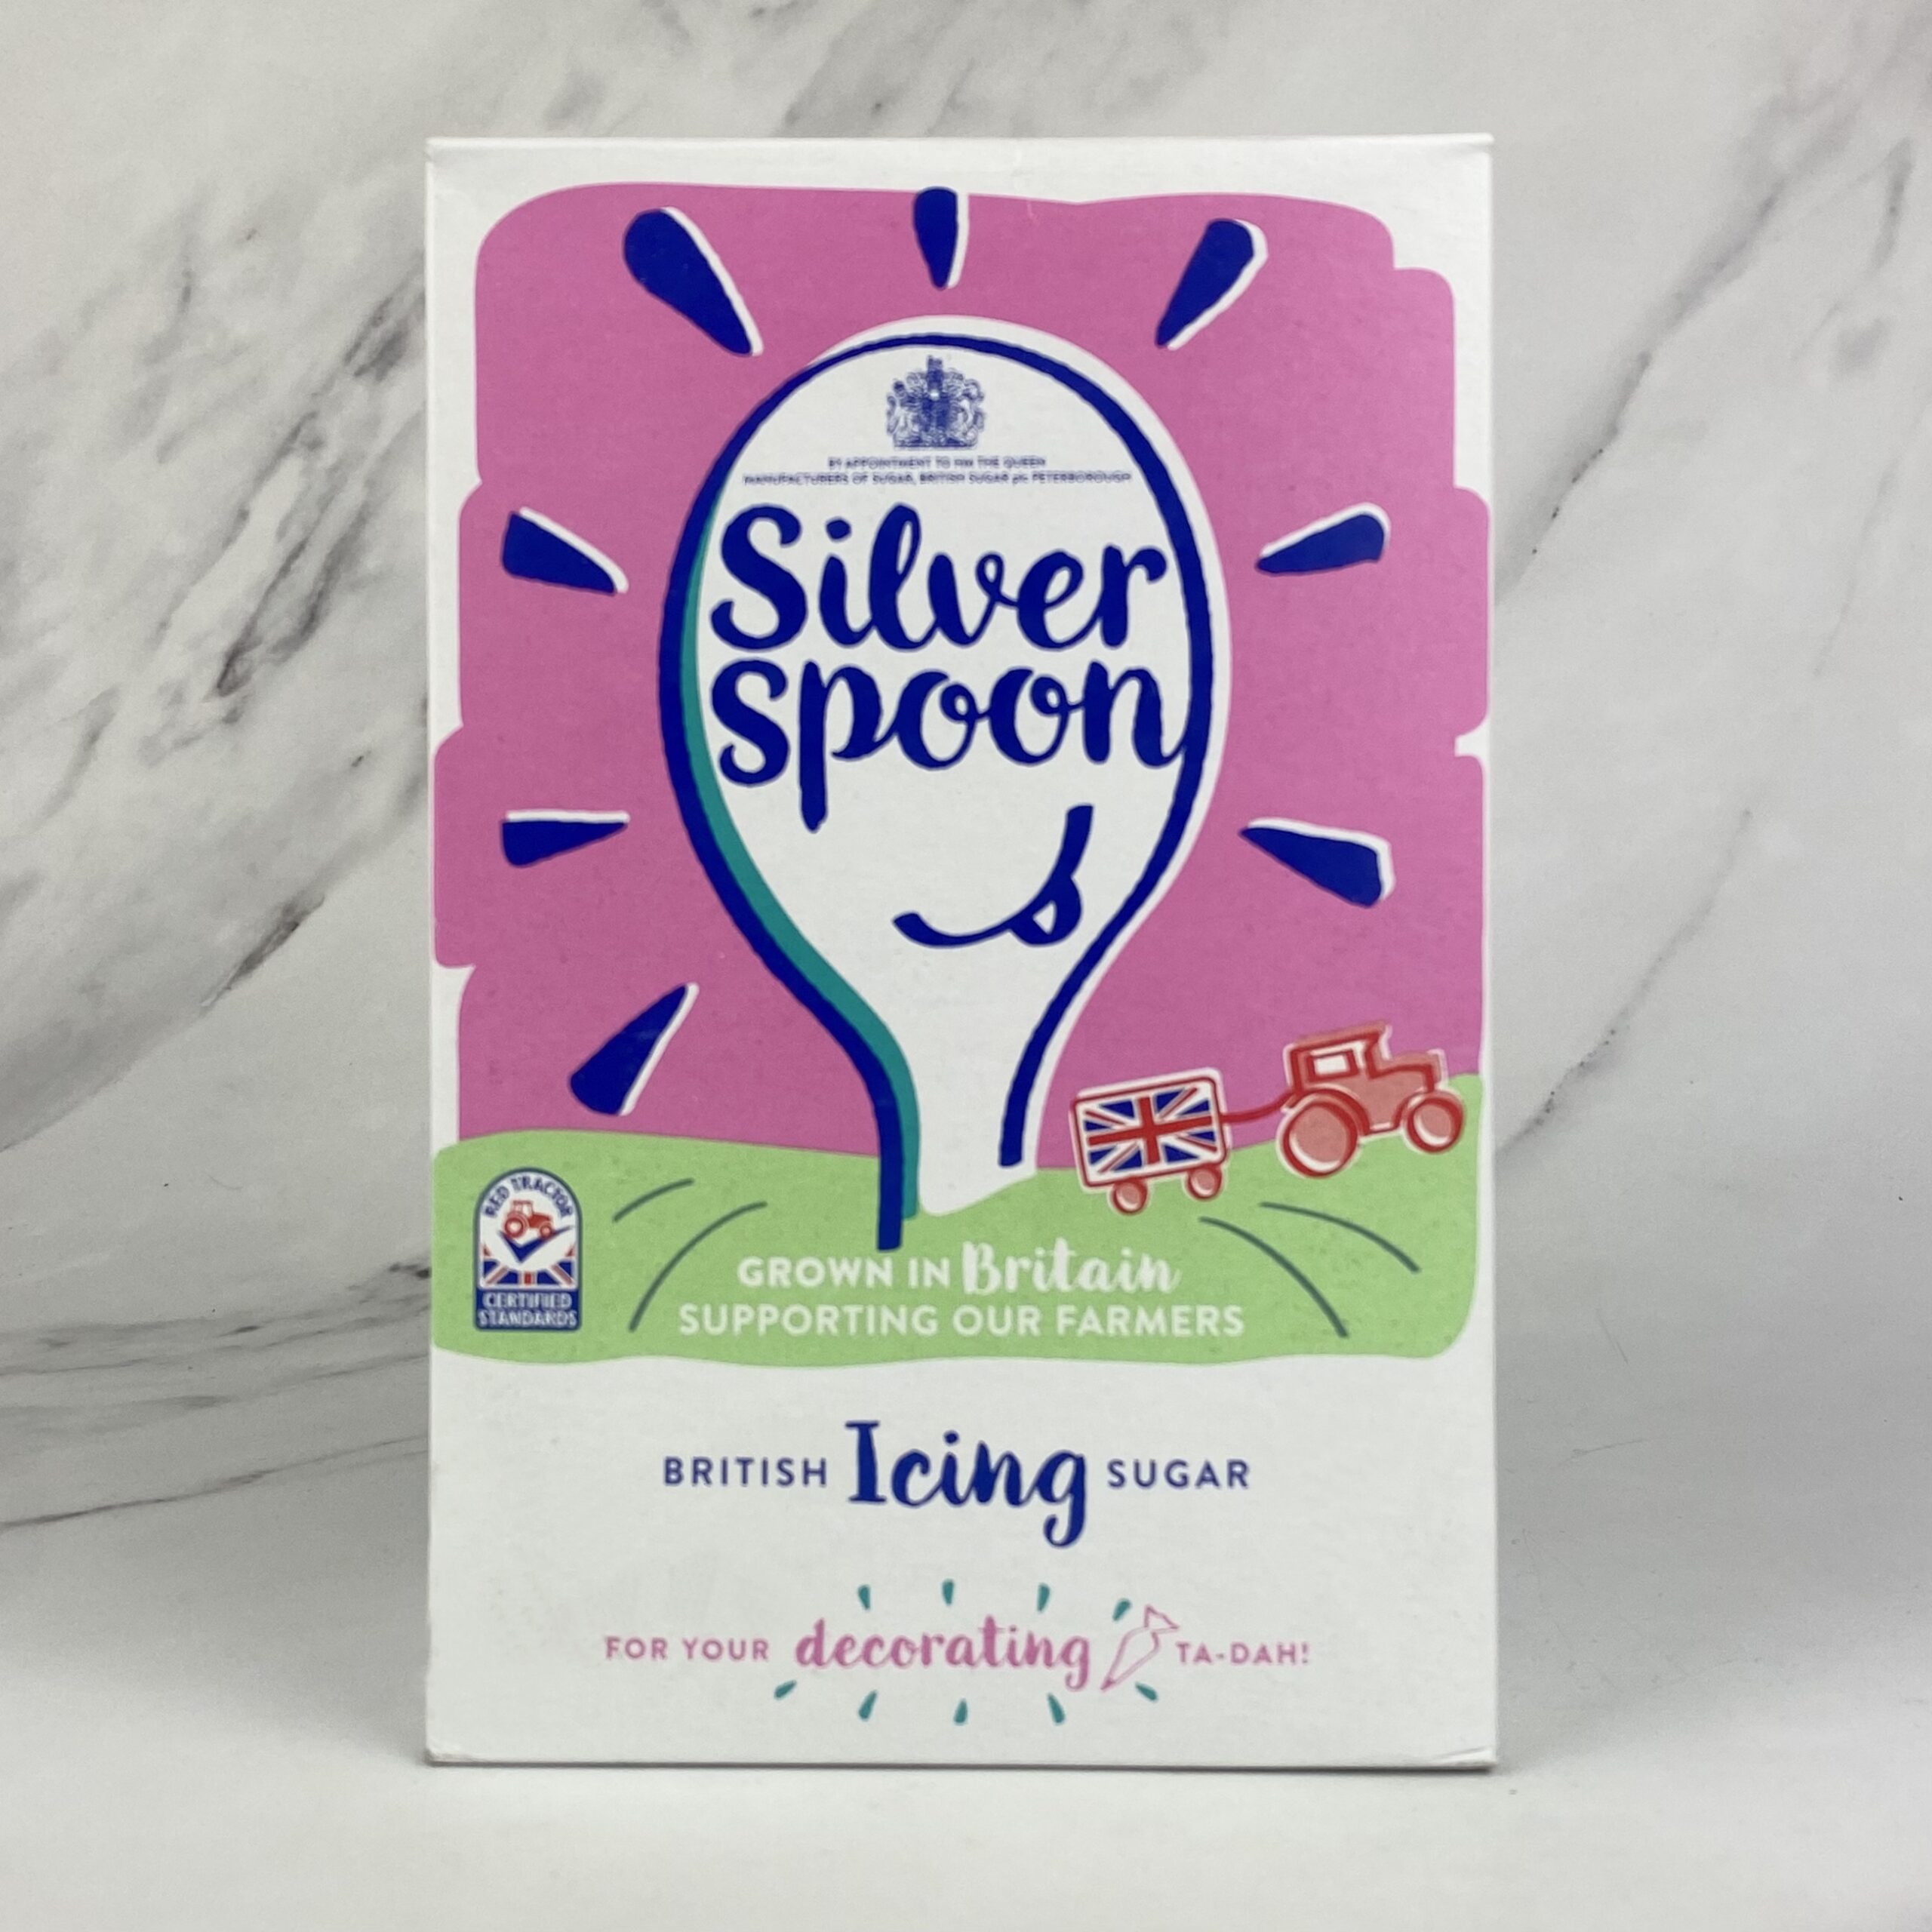 Icing Sugar – 1kg